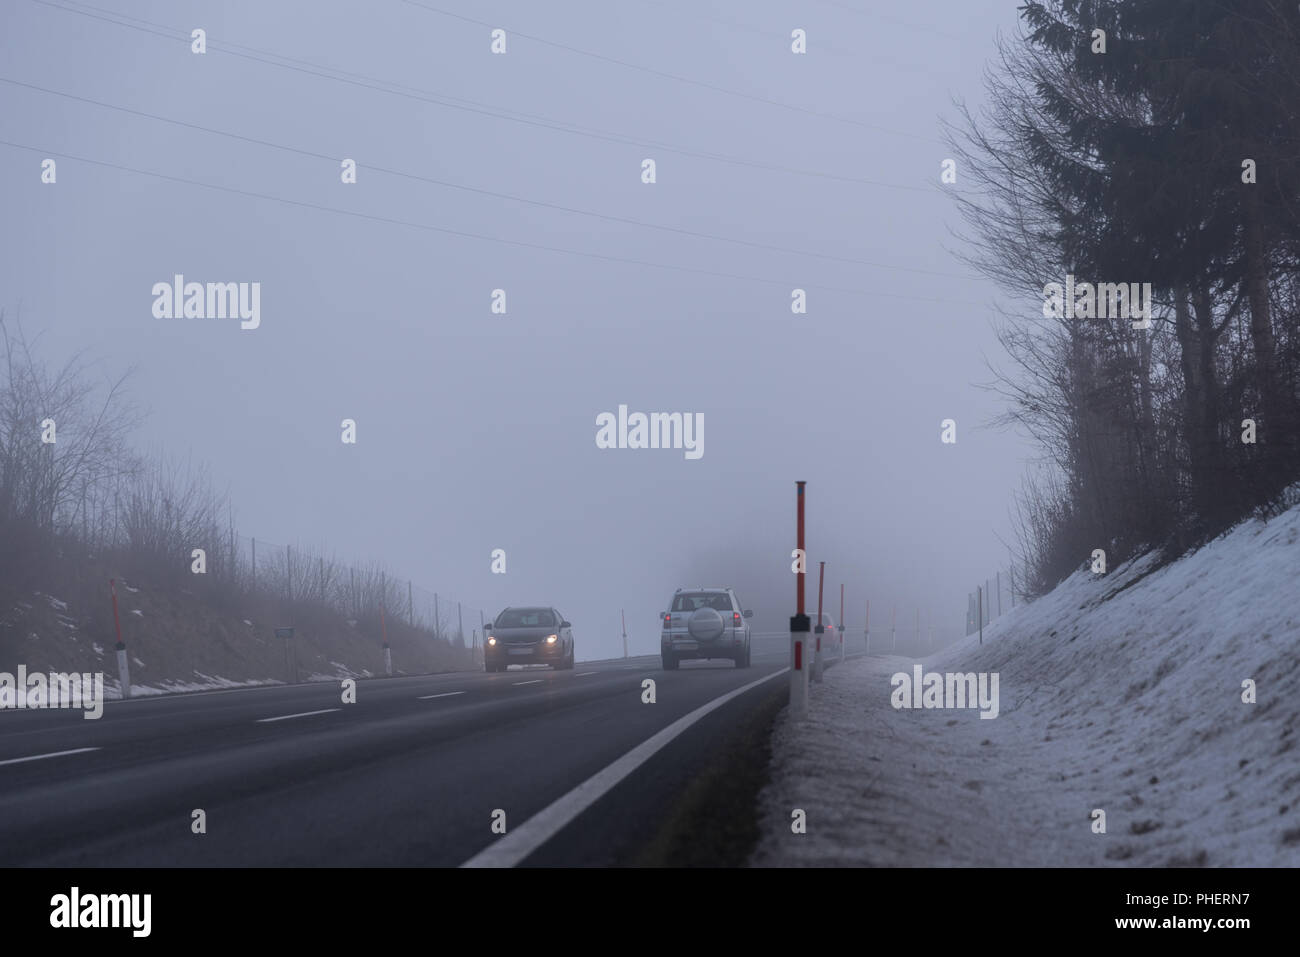 Schlechte Sicht durch Nebel auf einer Landstraße Stockfoto